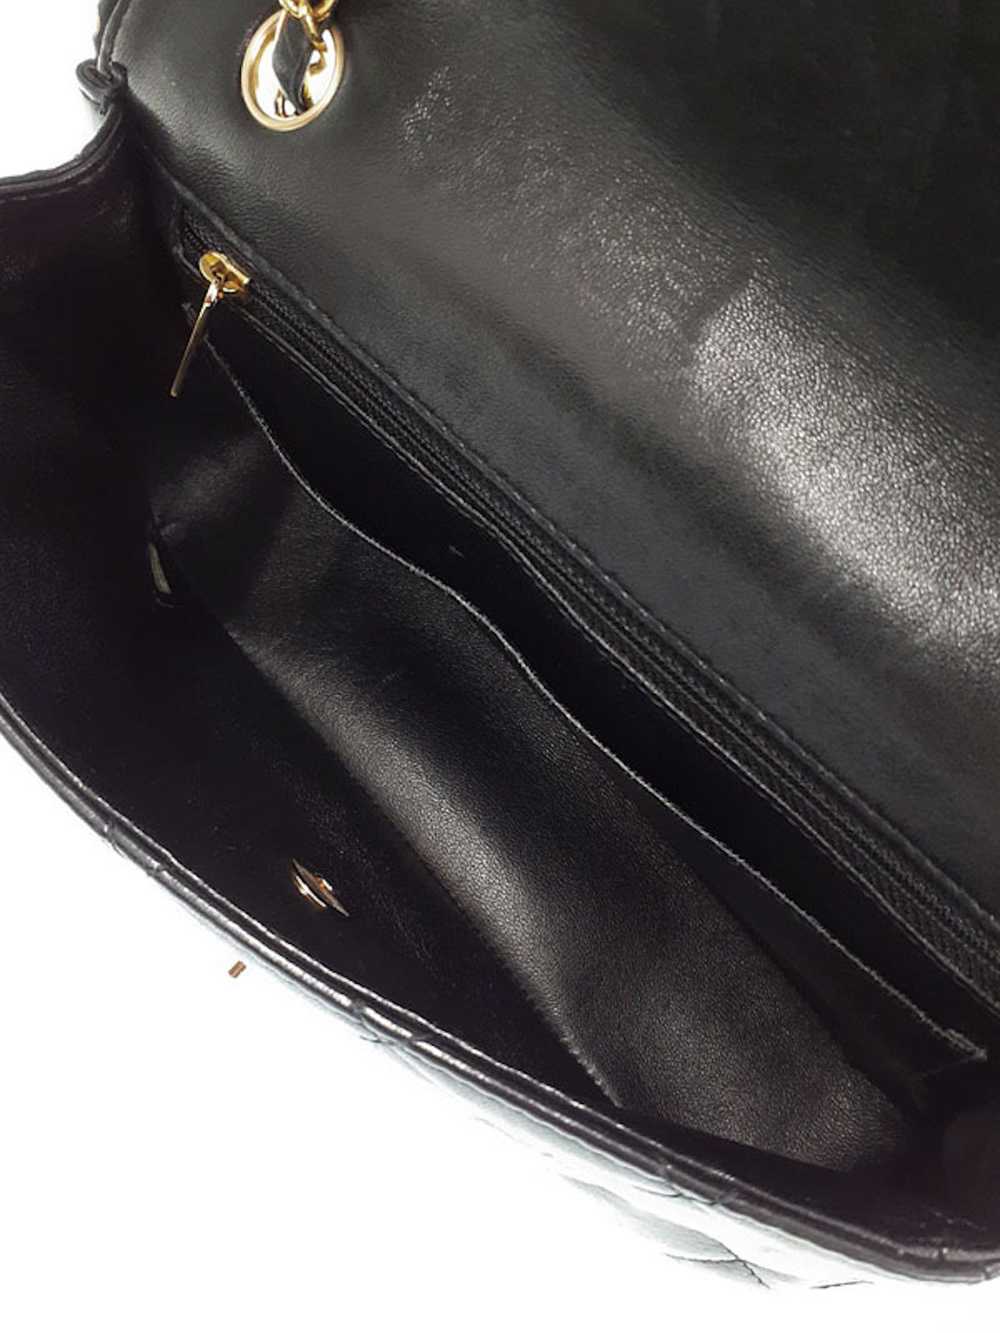 Chanel Chanel Matelasse Chain Shoulder Bag Black - image 3